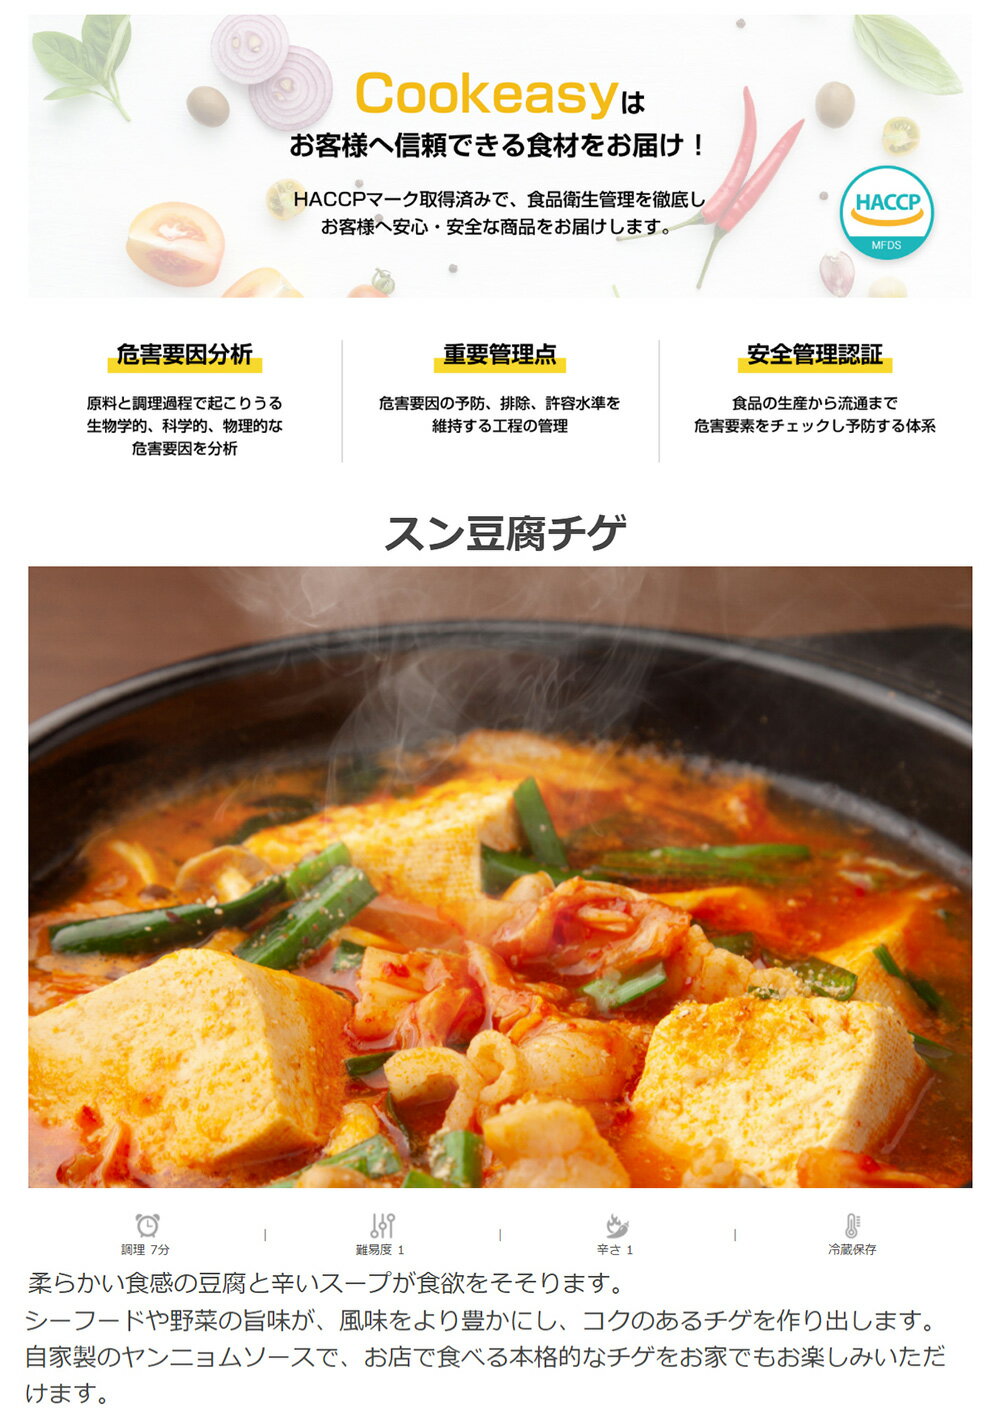 【スーパーセール最大30％OFF】韓国料理 ミールキット【クックイージー】スンドゥブチゲ 2人前 (560g) x 1個 韓国食品 日本製造 自家